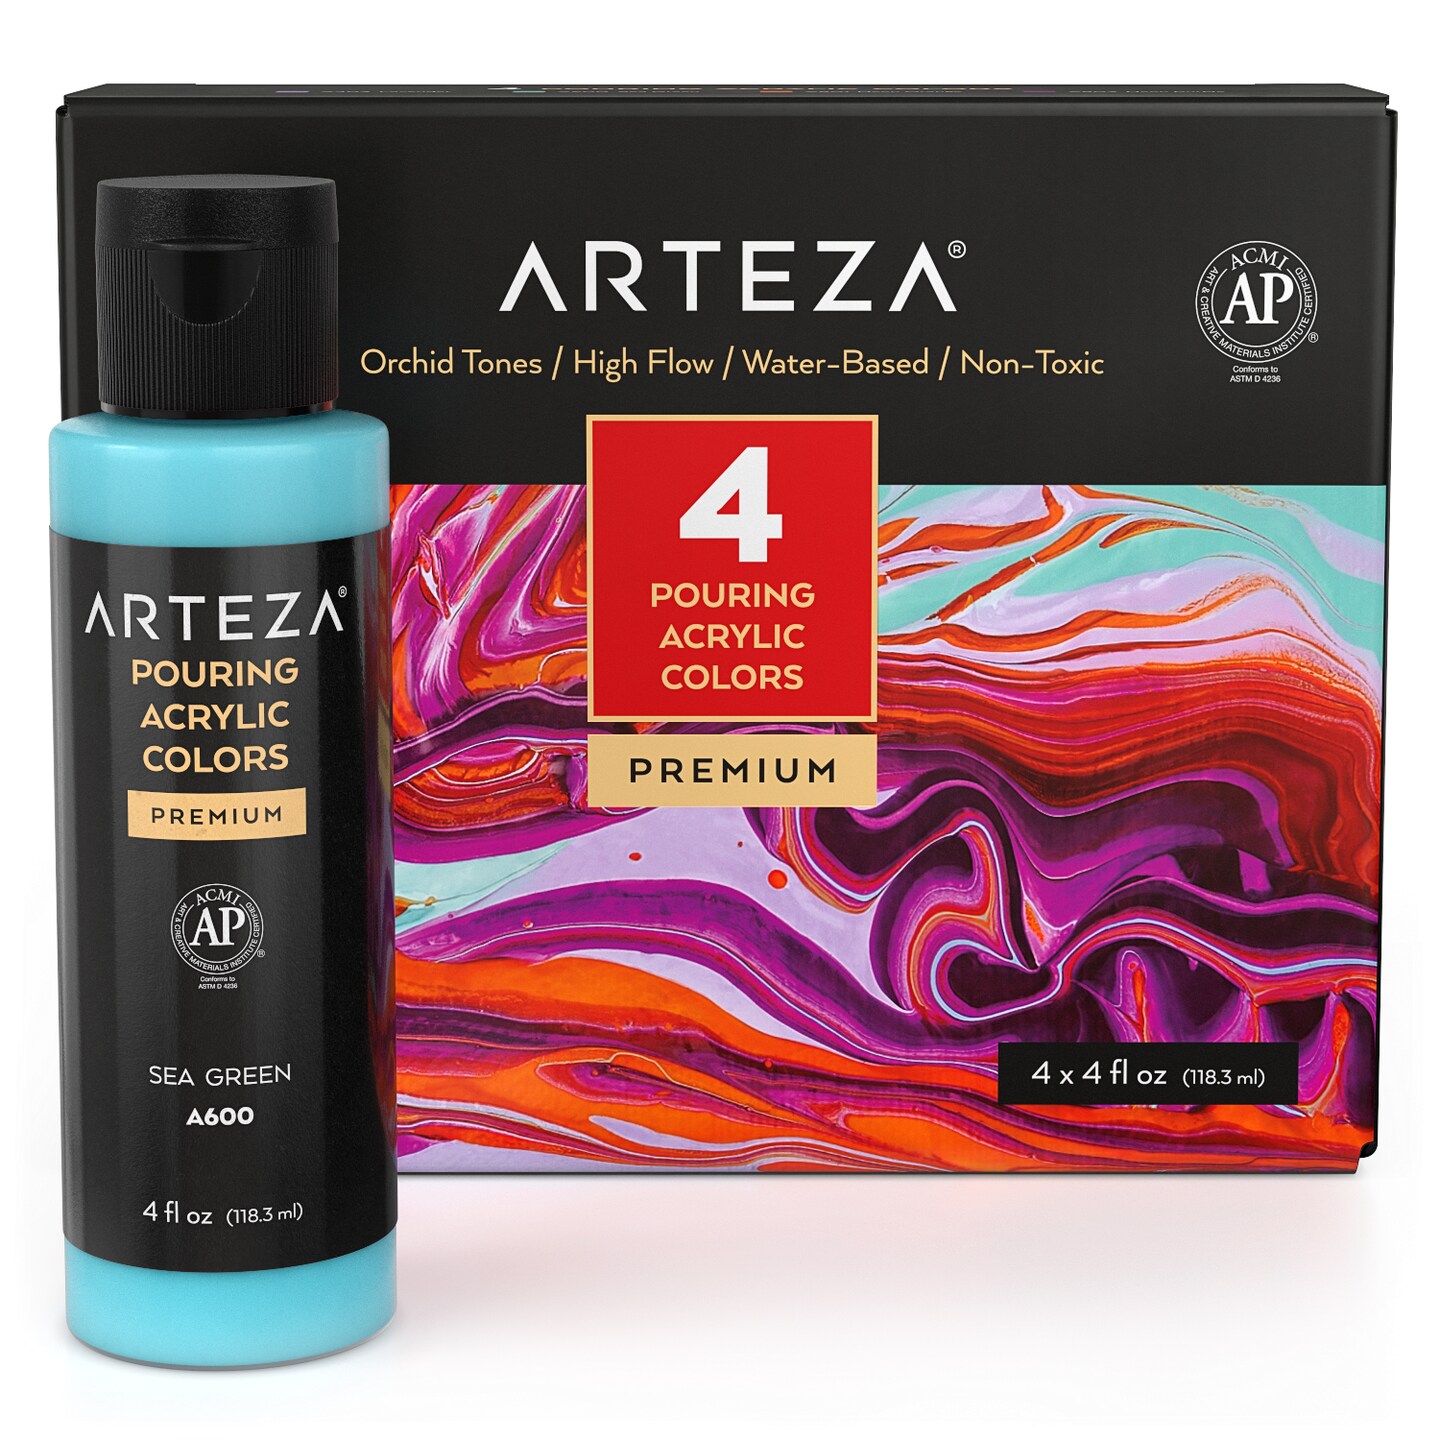 Arteza Acrylic Pouring Paint Kit 120 Ml Bottle Set Orchid Tones 4 Pack Acrylic Paint